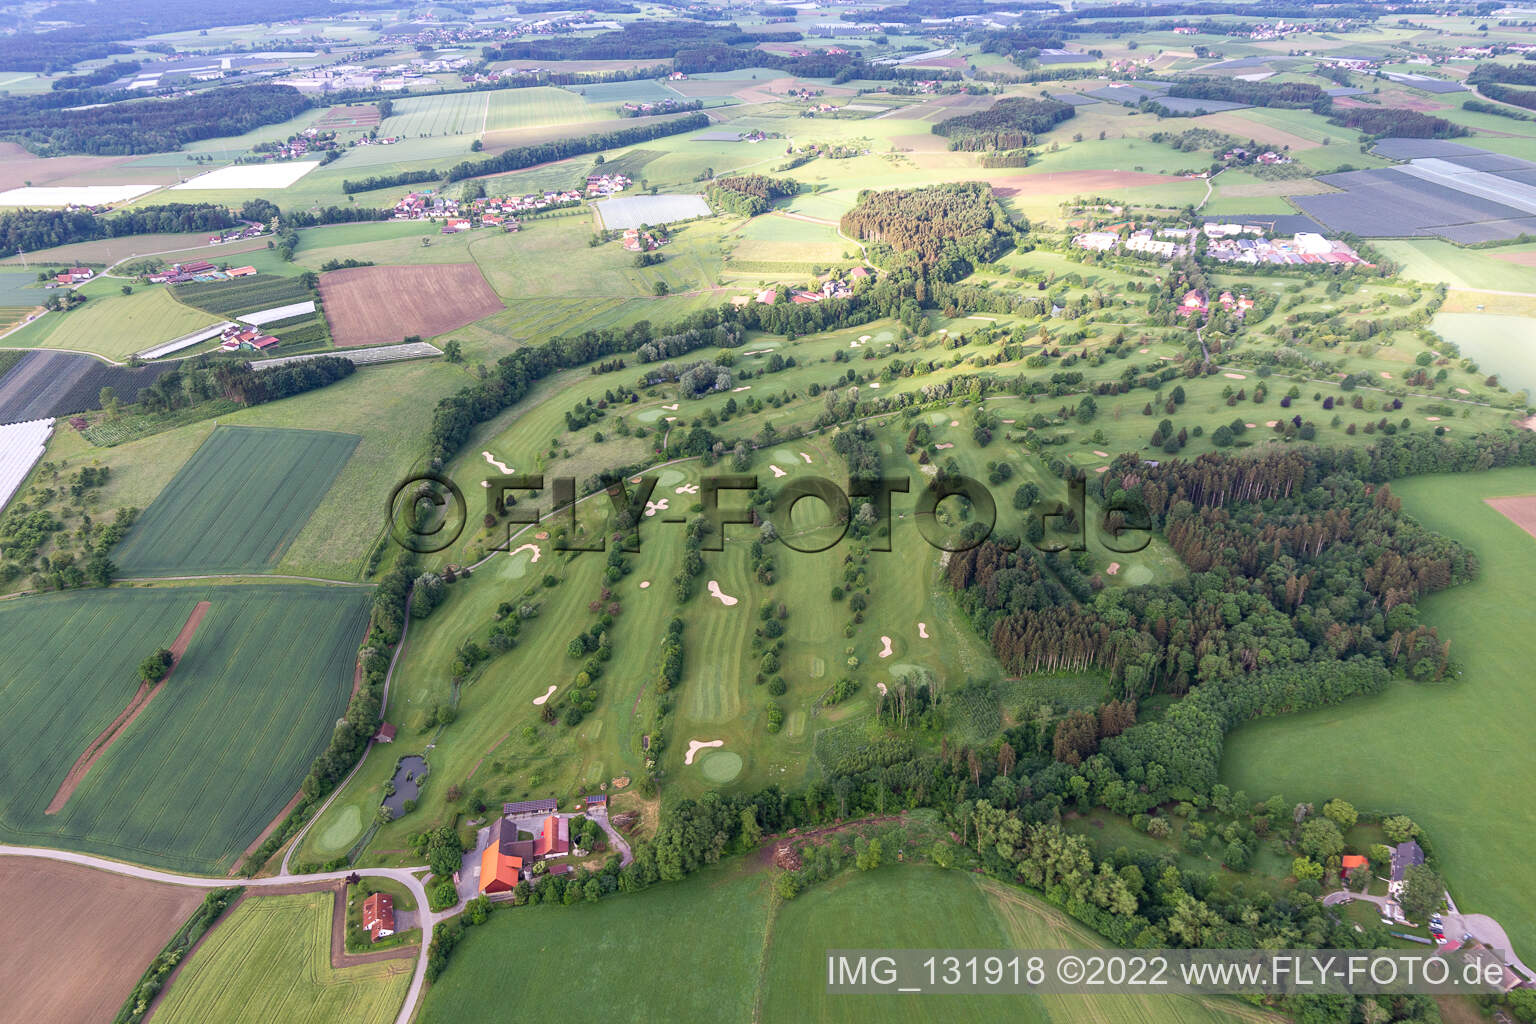 Photographie aérienne de Terrain de golf Ravensburg à Ravensburg dans le département Bade-Wurtemberg, Allemagne